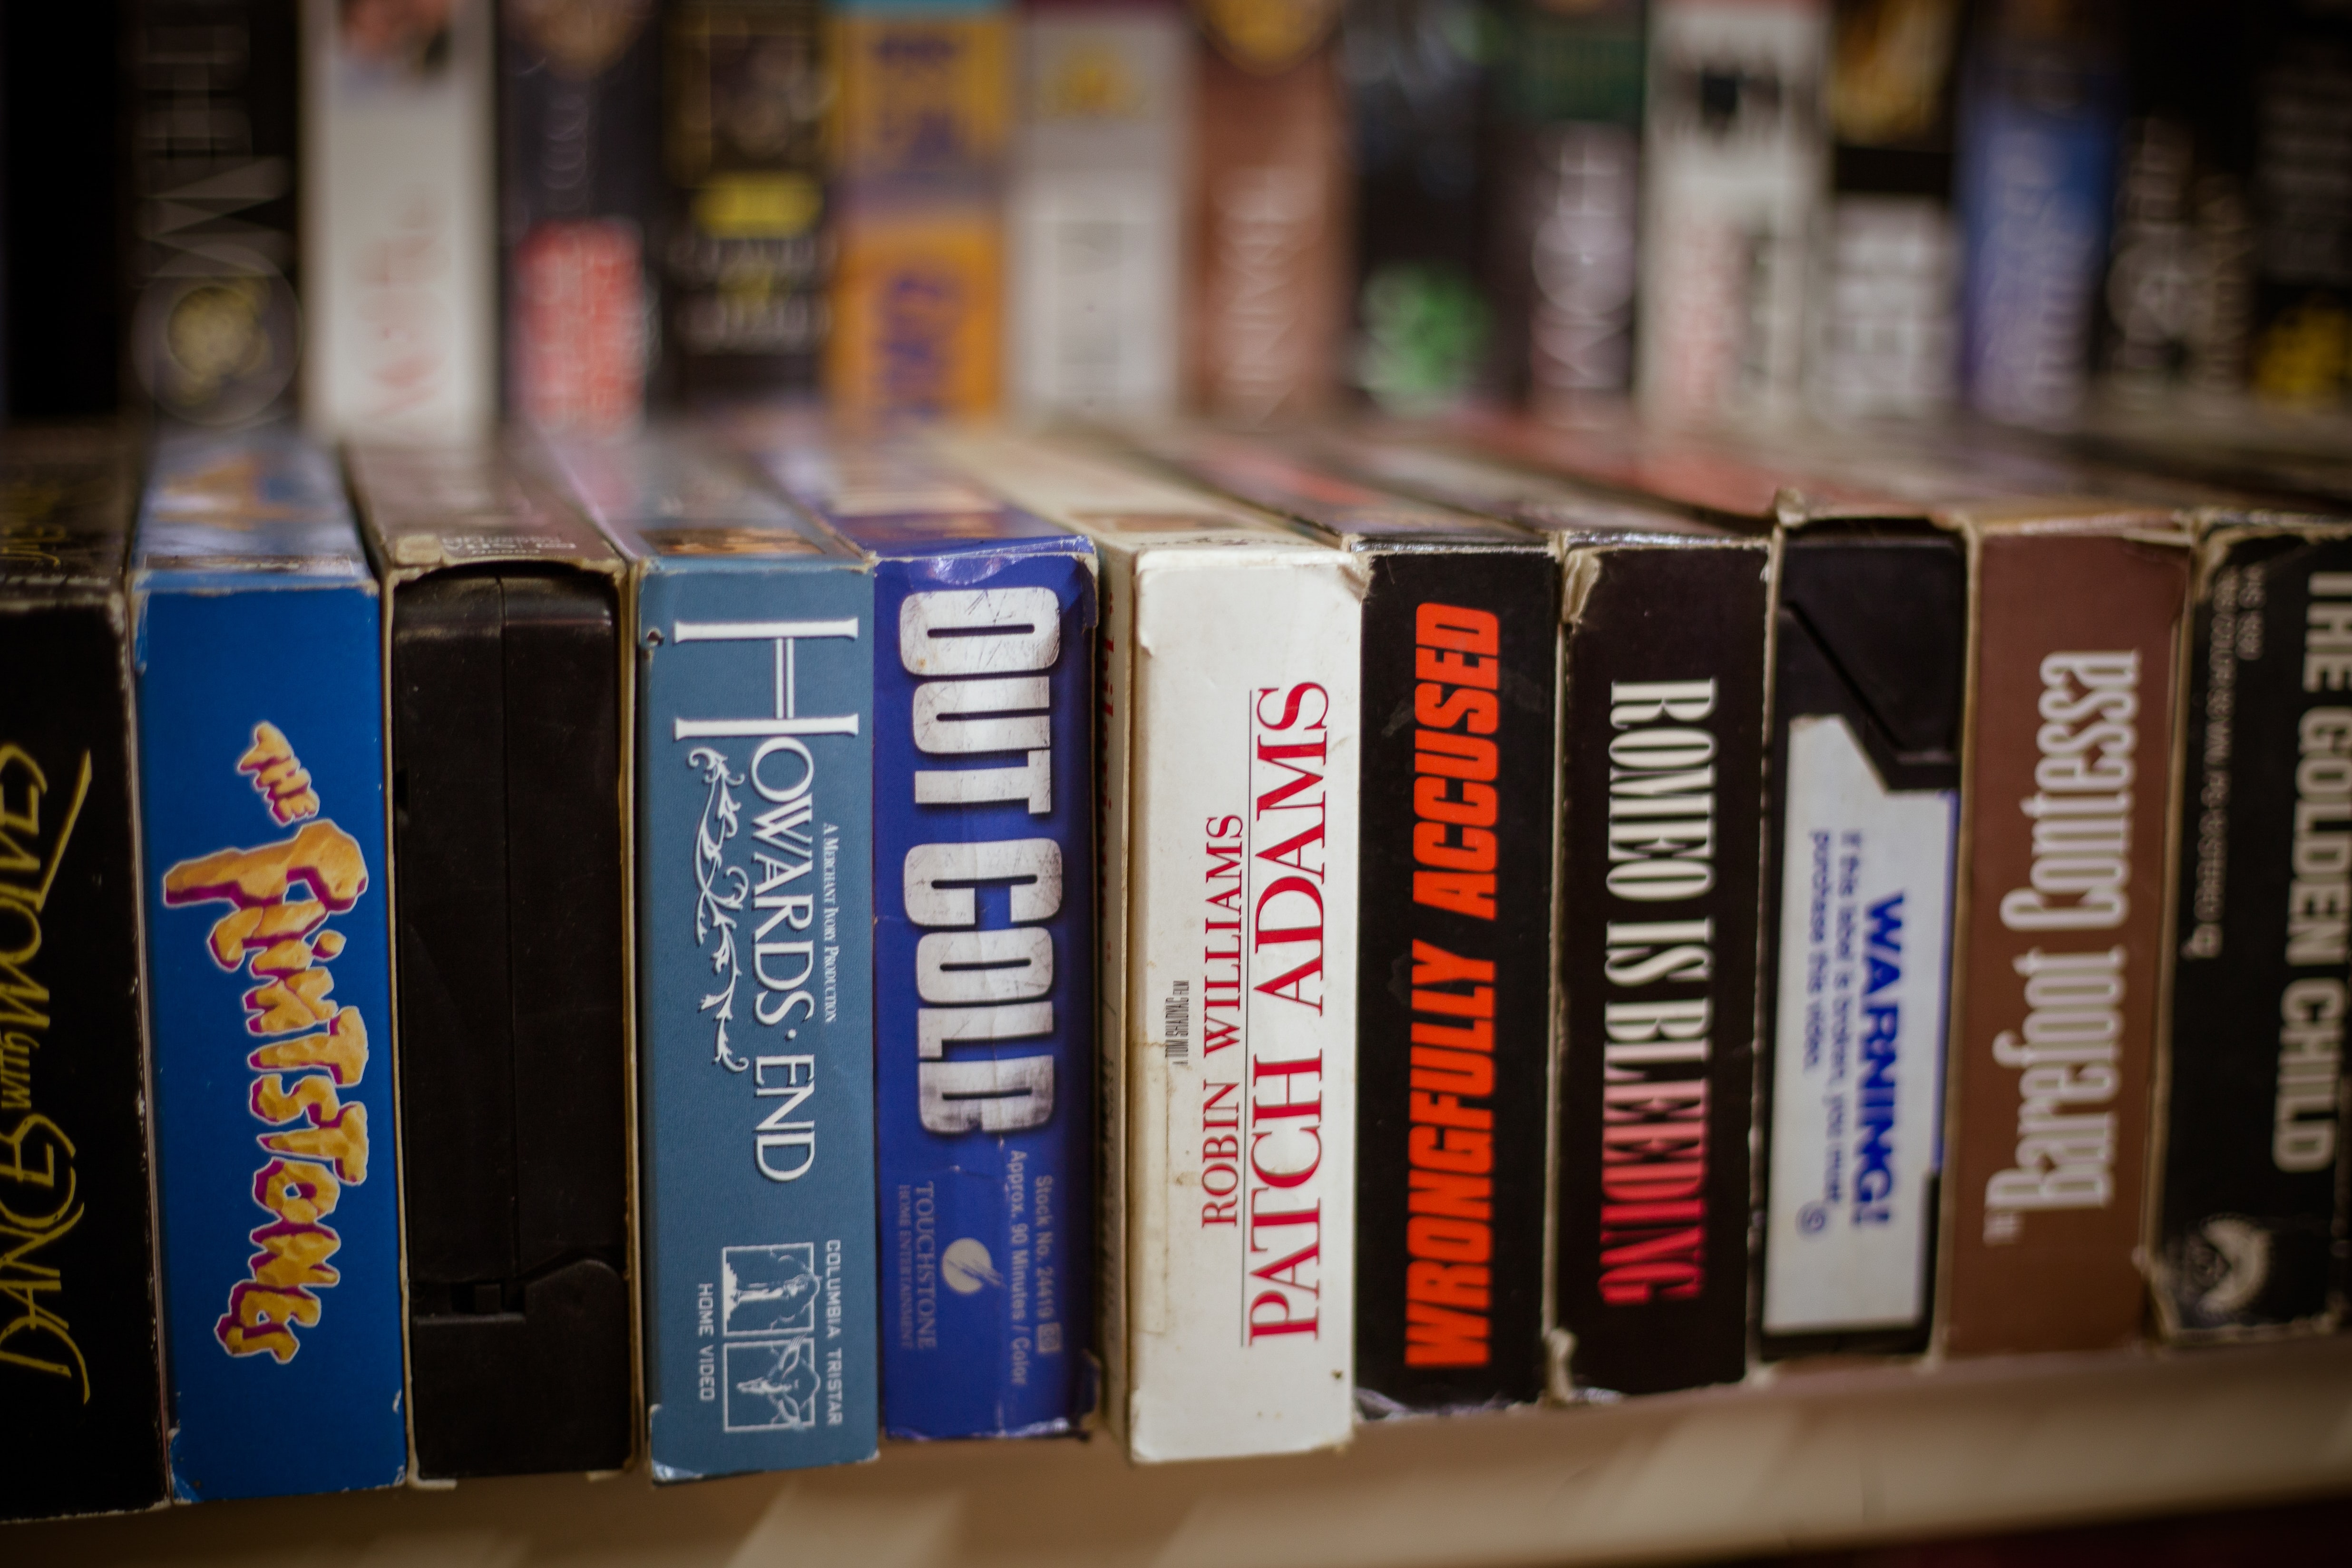 Vos cassettes VHS valent peut-être une fortune